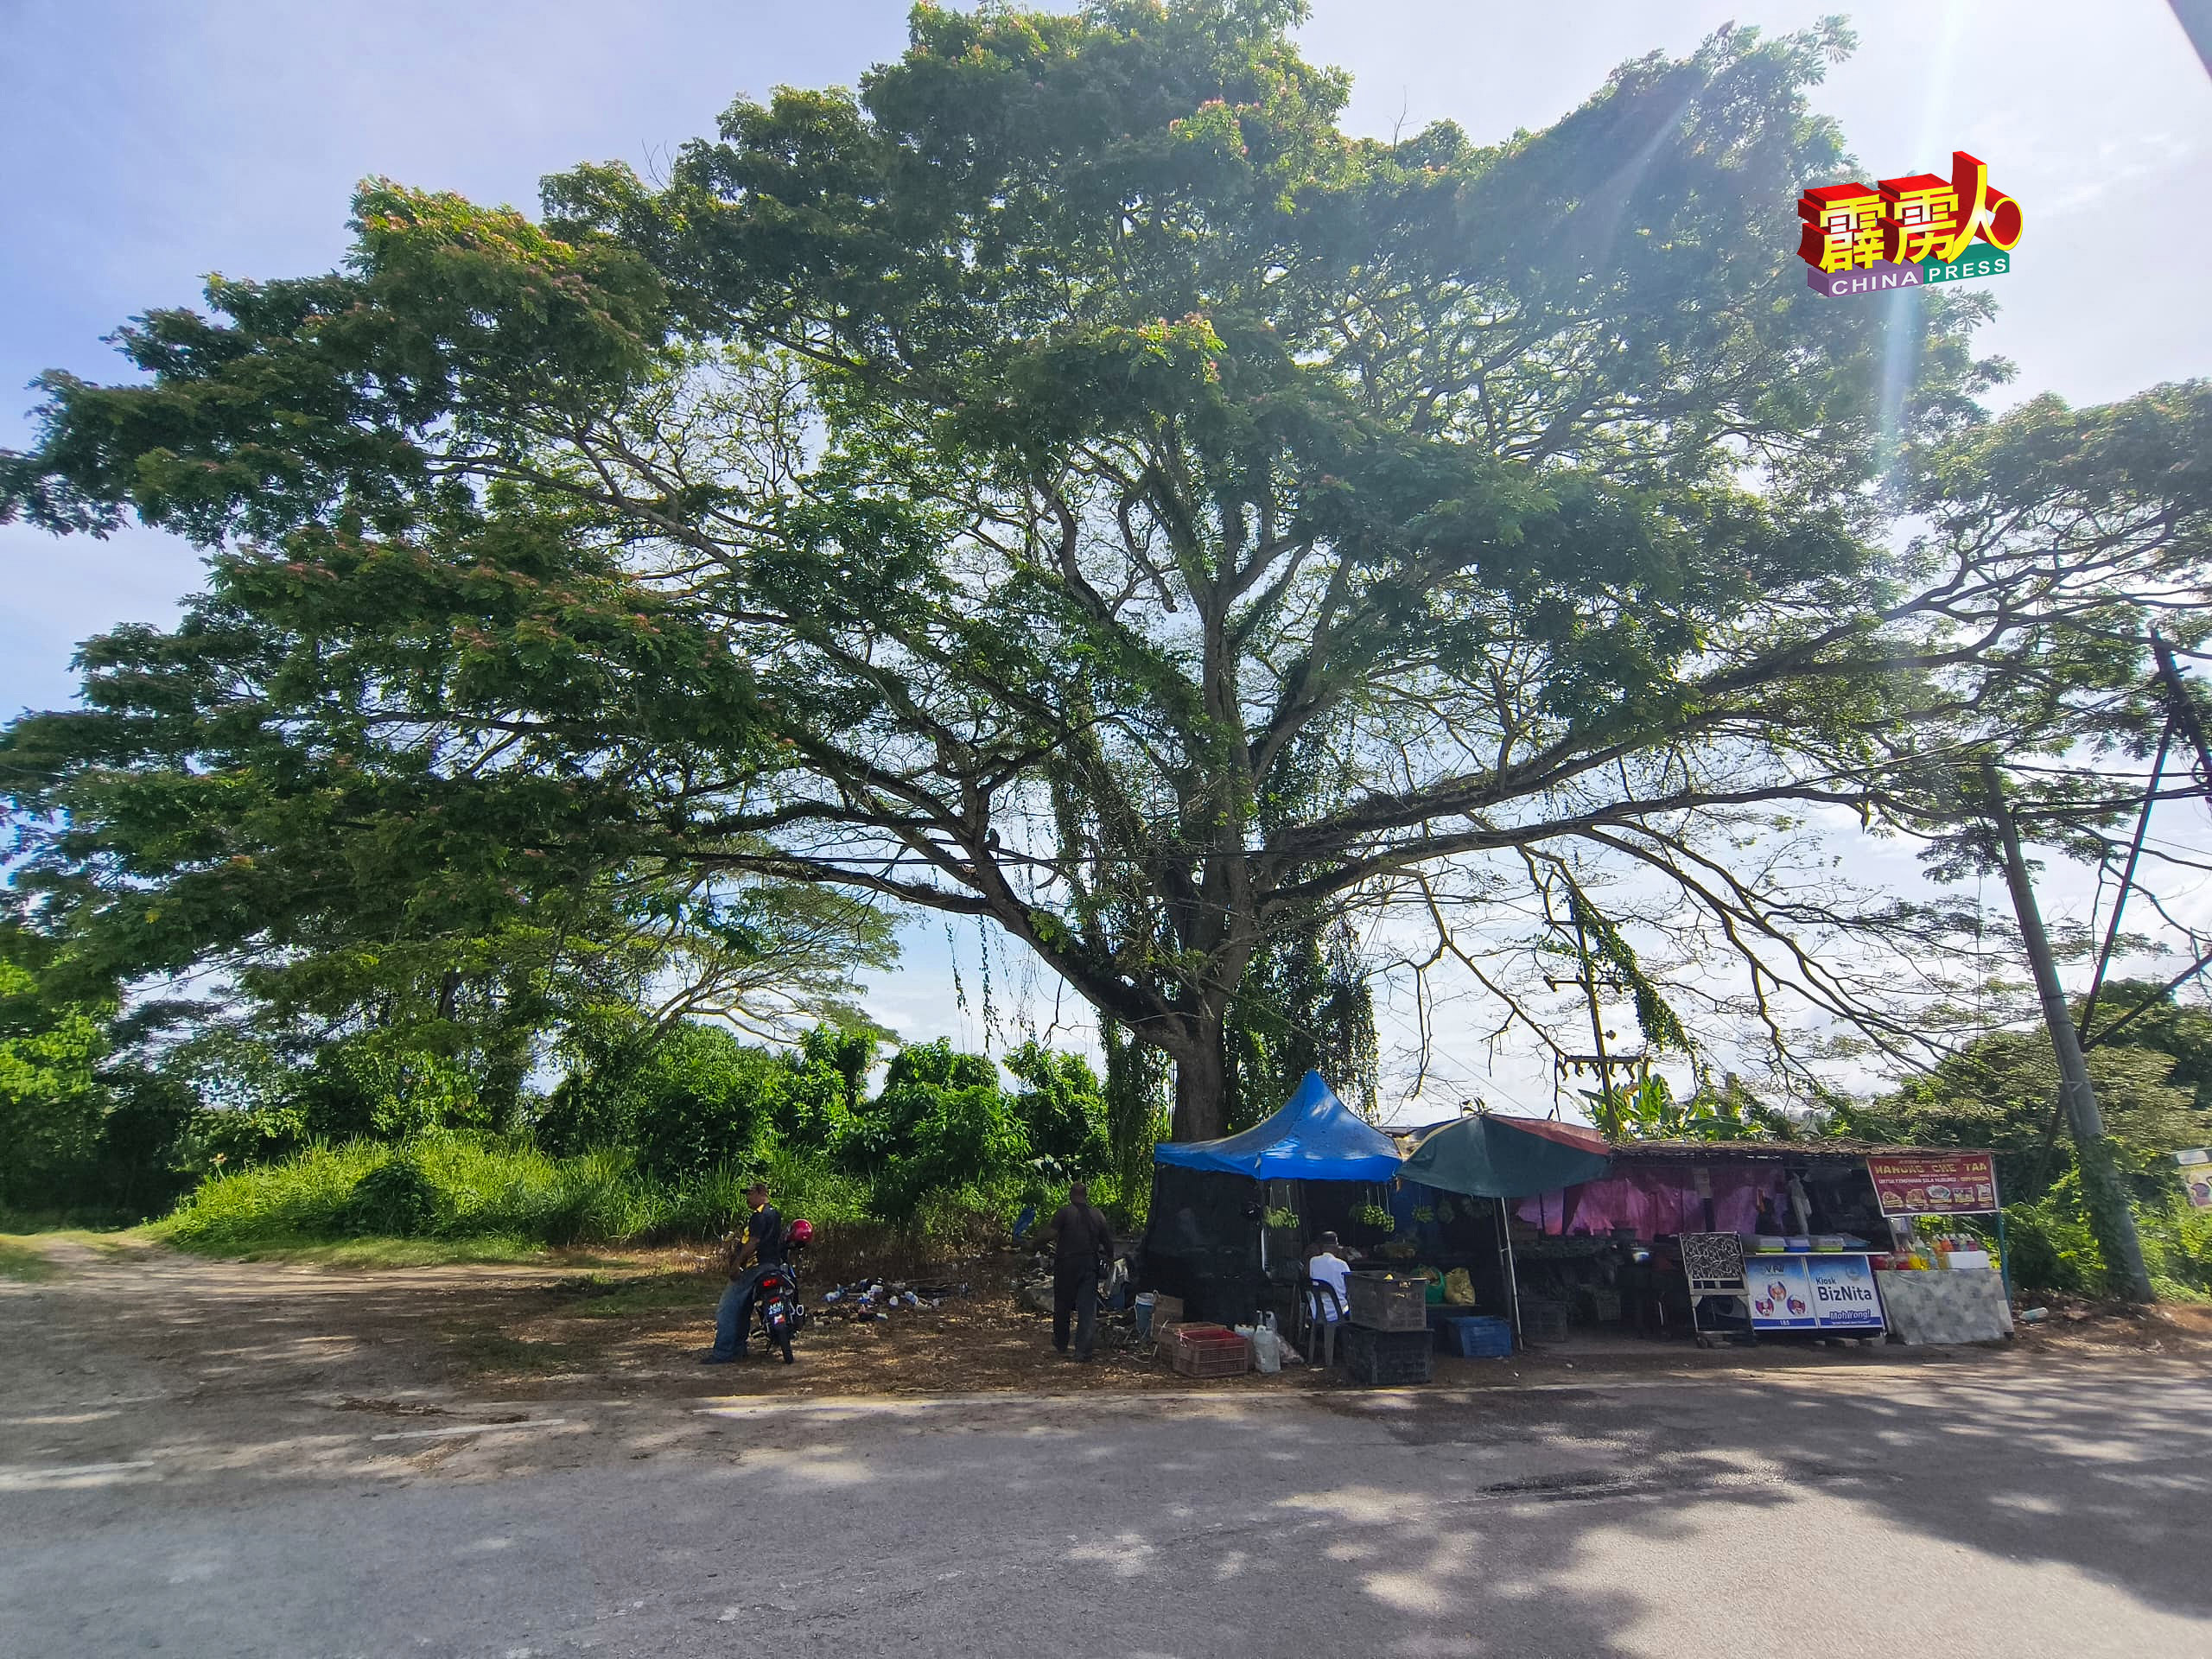 宁罗市镇与火车桥之间一个转弯处，当地人称为大树下的地方，将会闢成泊车场，至少可停放5辆旅巴。